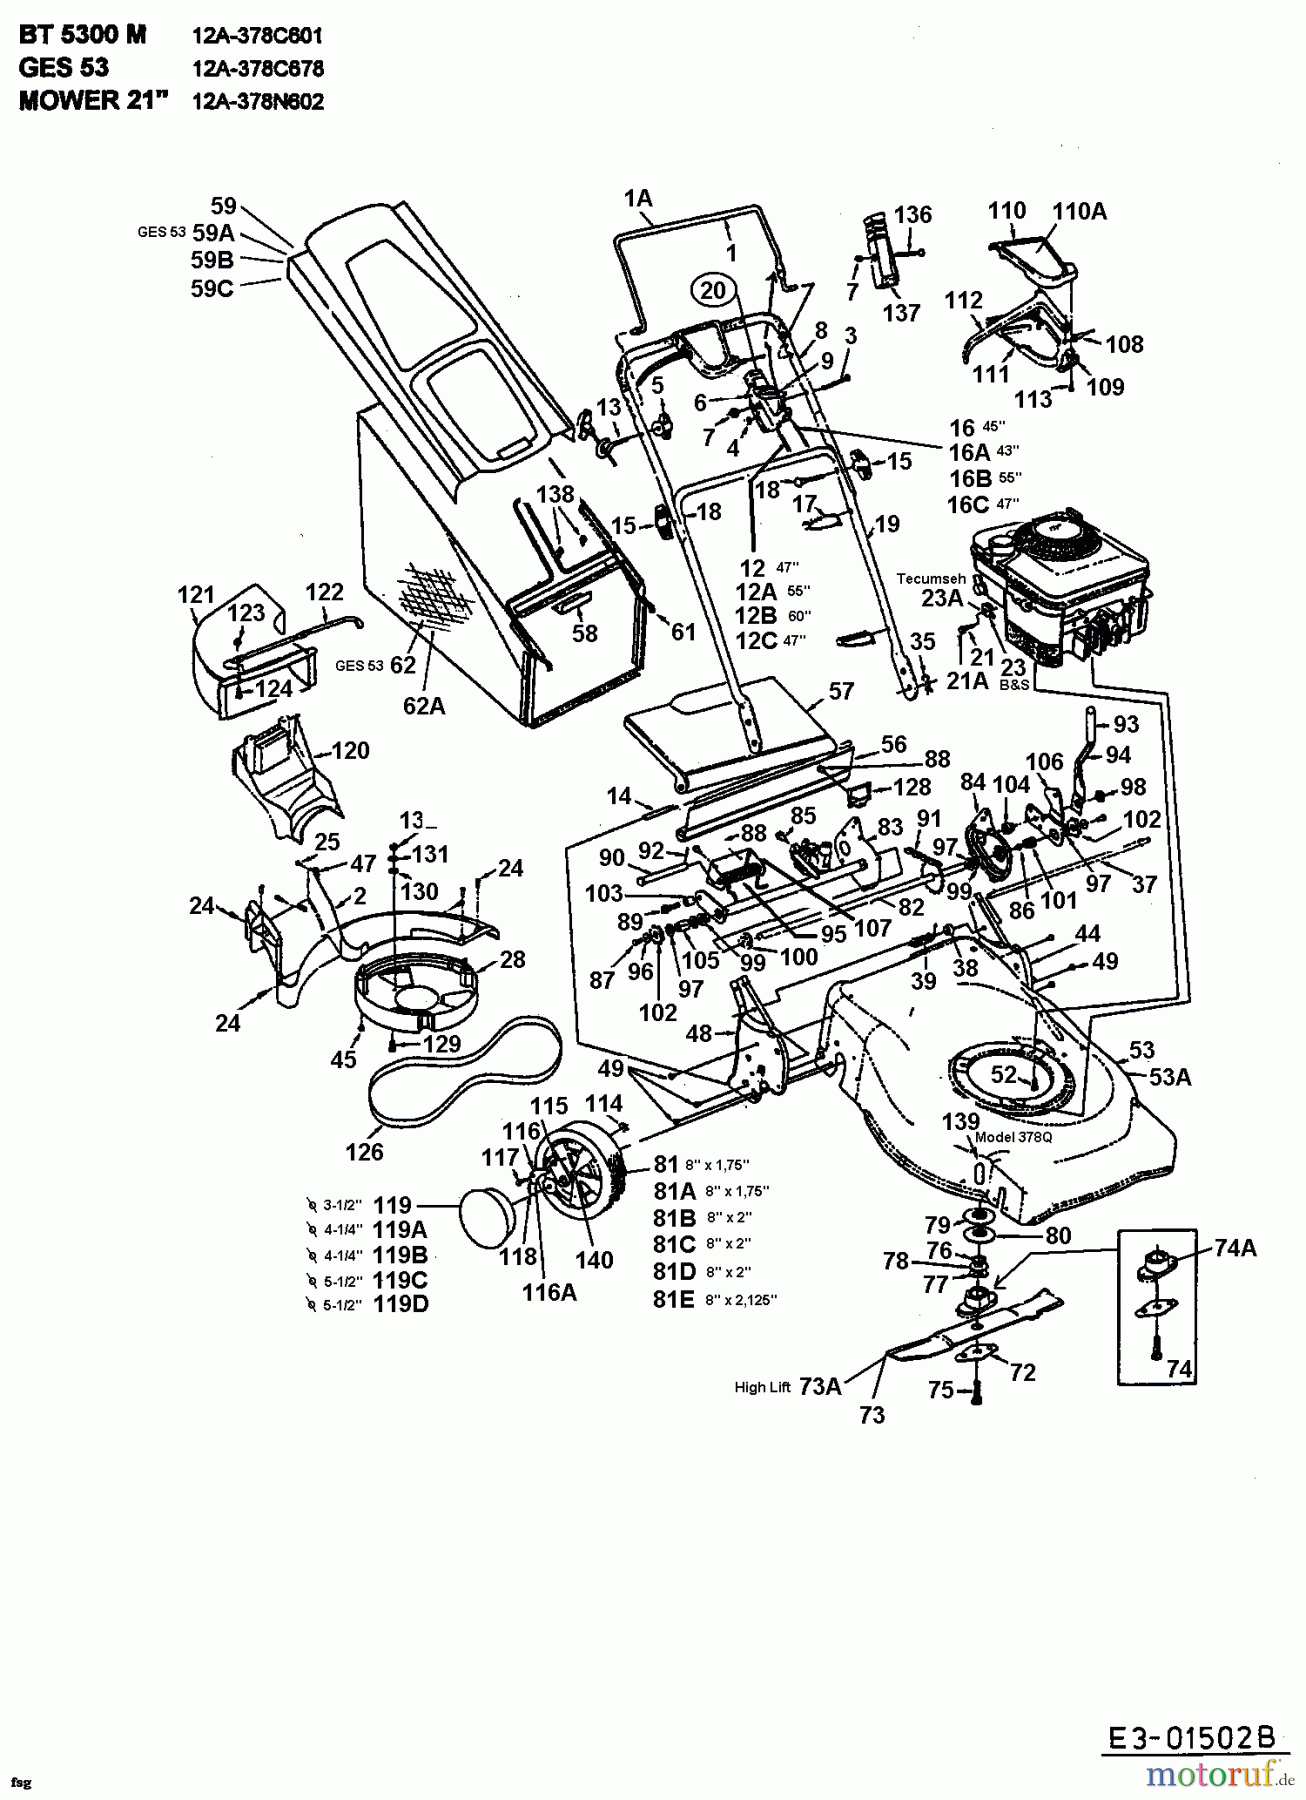  MTD Motormäher mit Antrieb 378 N 12A-378N602  (2001) Grundgerät